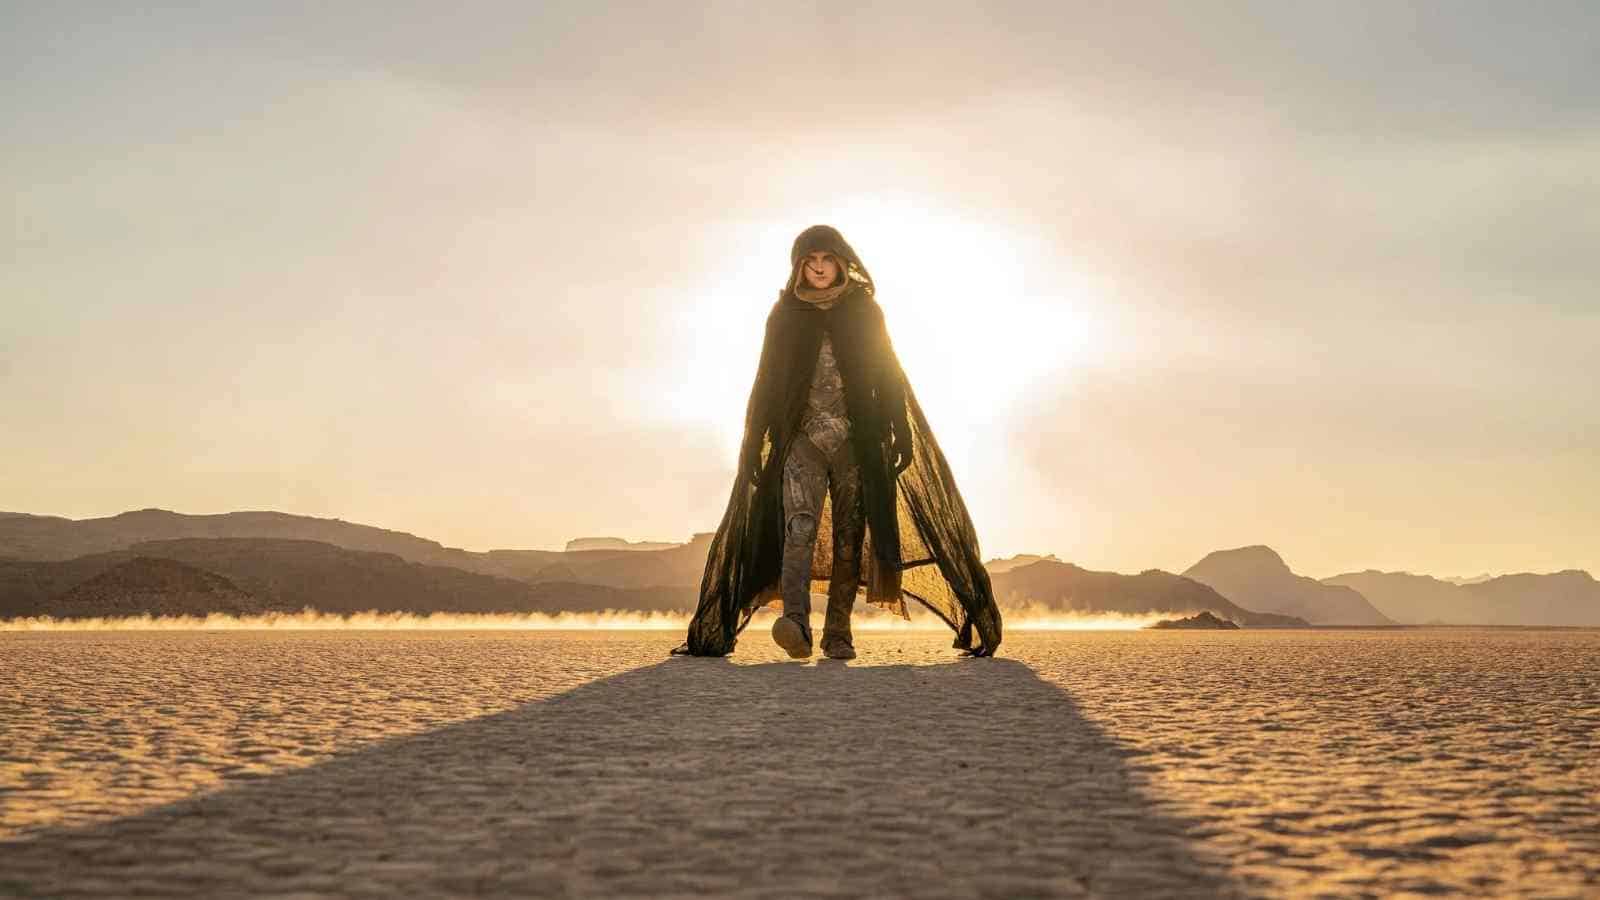 Il deserto del libro Dune sul pianeta Arrakis ha dato l'imput creativo per una tuta innovativa